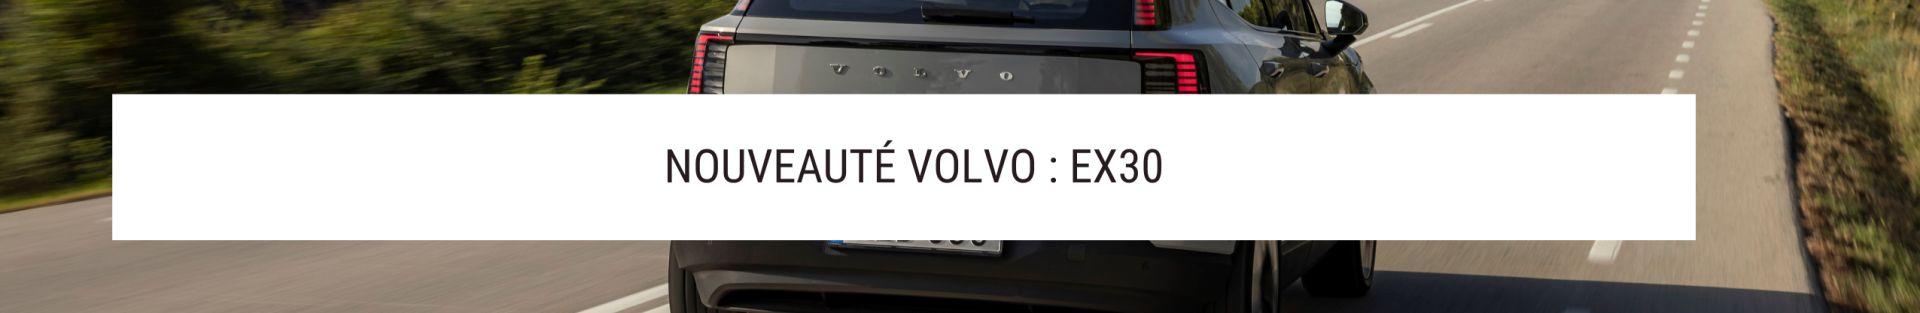 Découvrez le Volvo EX30 : Innovation et Puissance